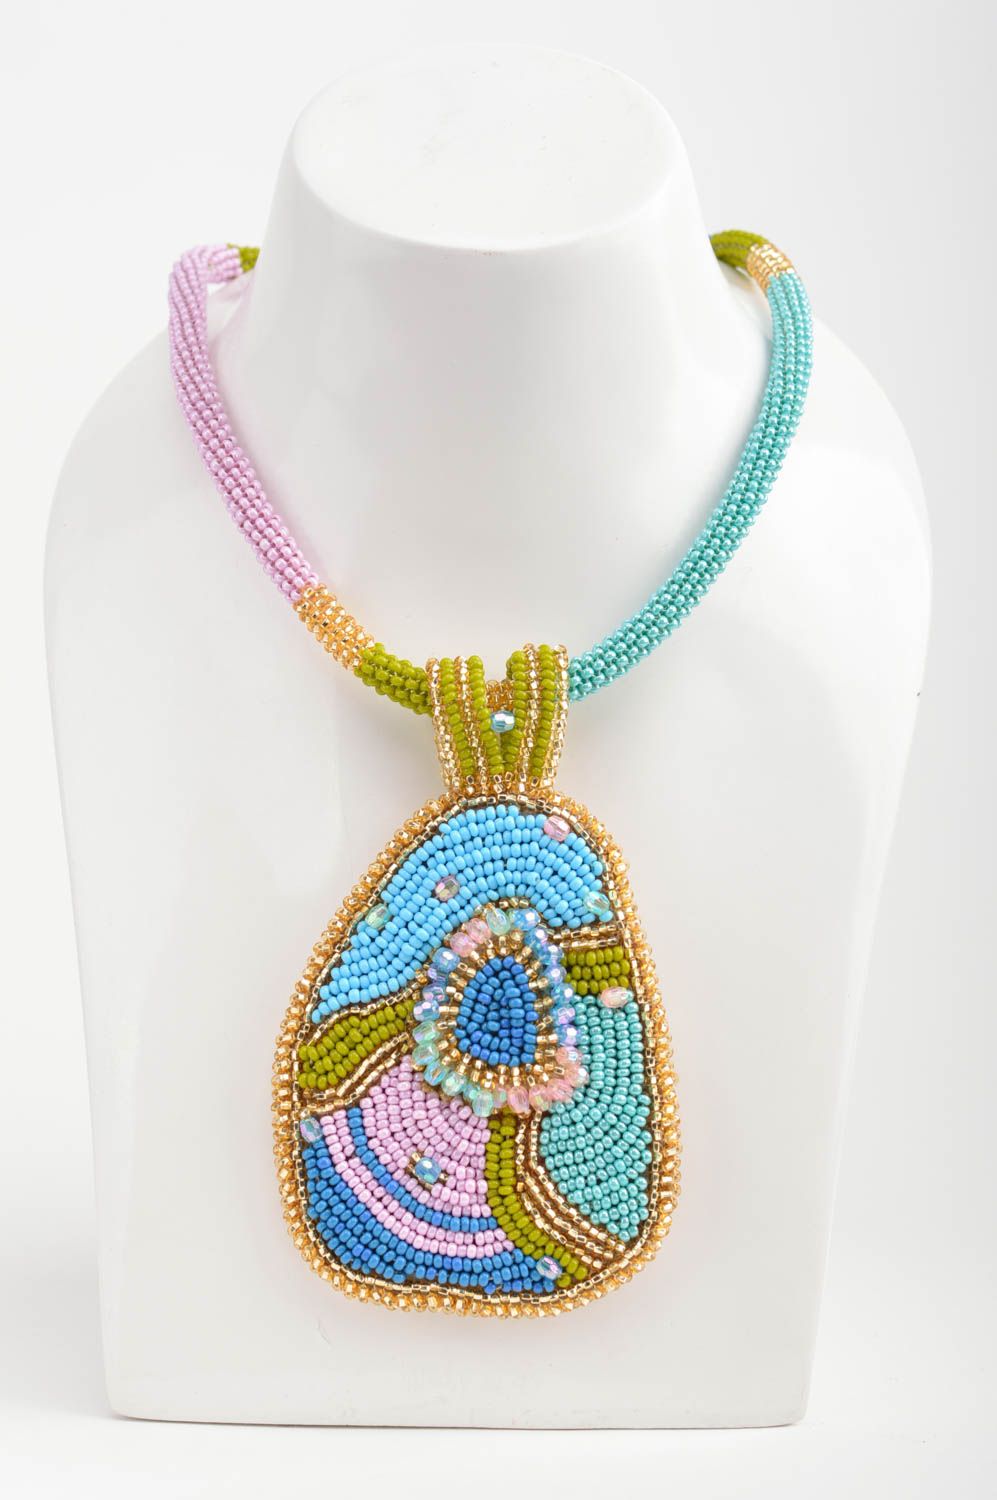 Ожерелье из бисера разноцветное с кулоном оригинальное красивое ручной работы фото 1